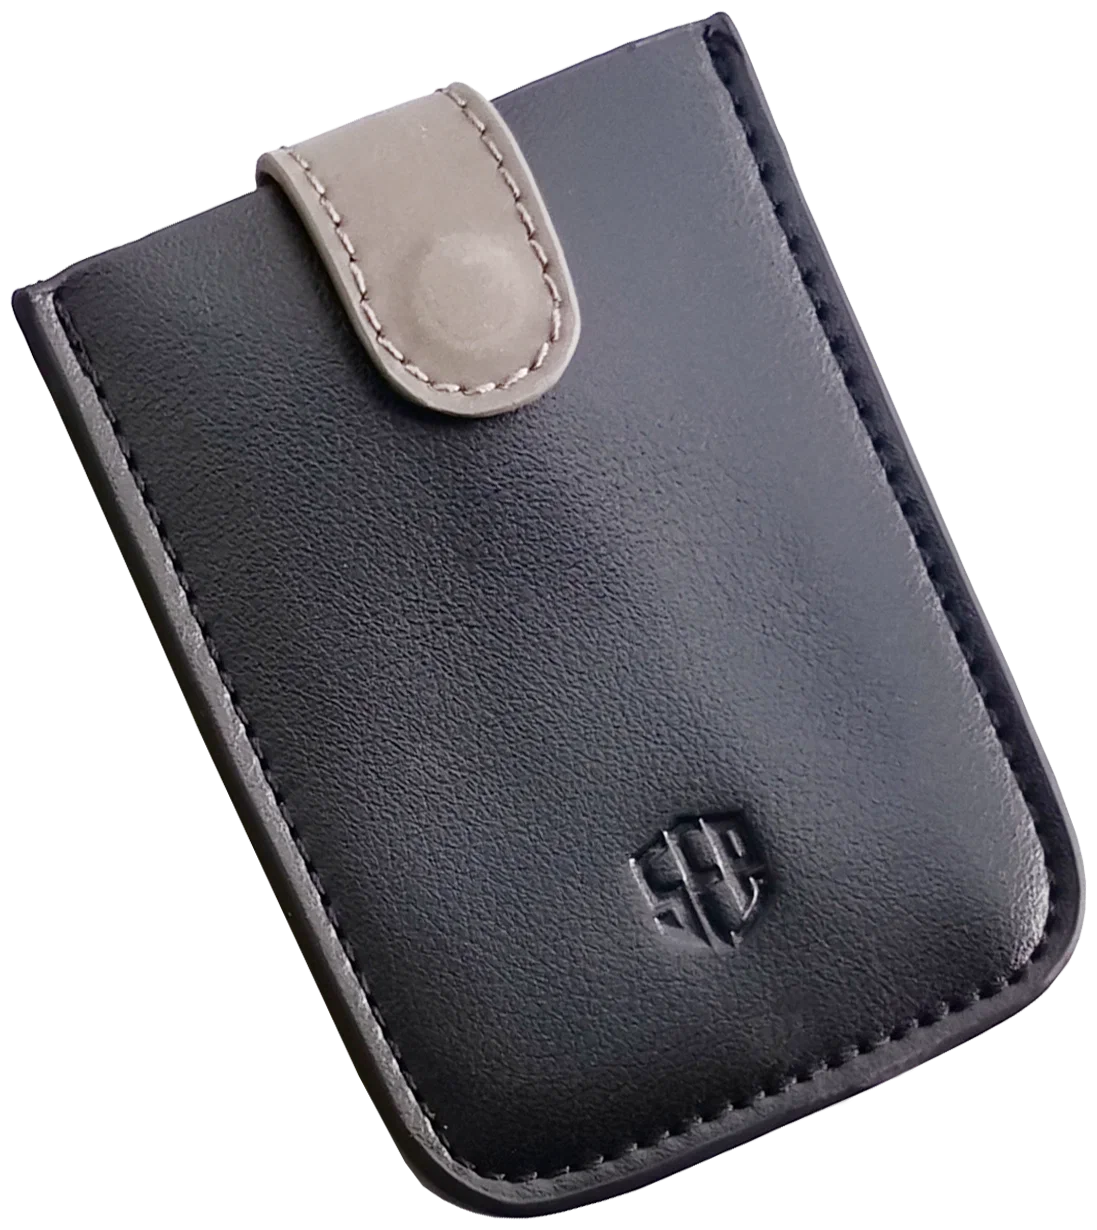 Чехол кожаный для SafePal Crypto Hardware Wallet